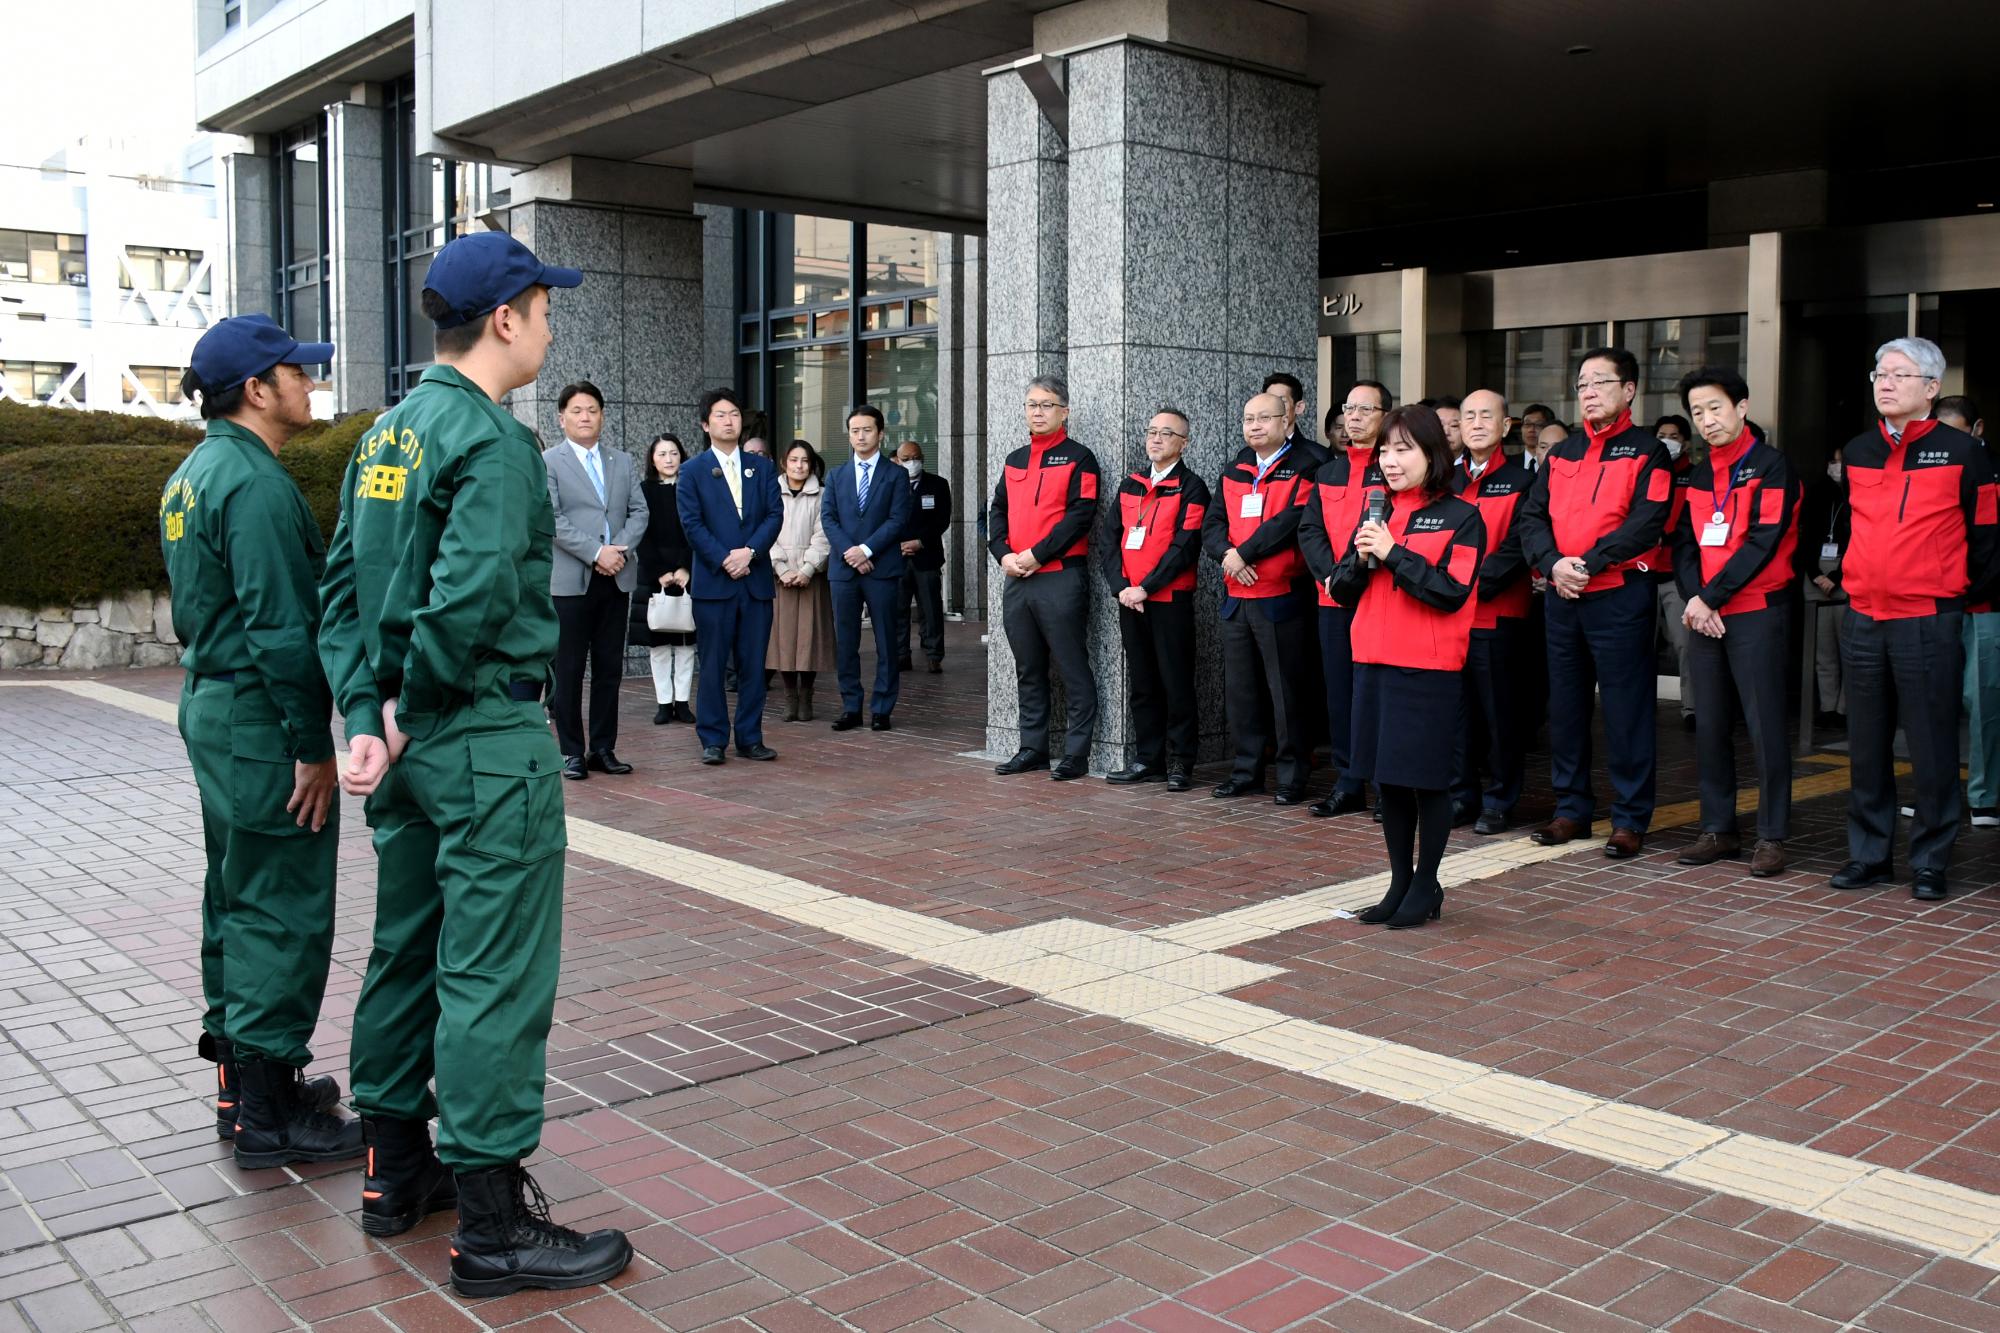 1月22日 被災地支援のために輪島市に職員を派遣のイメージ